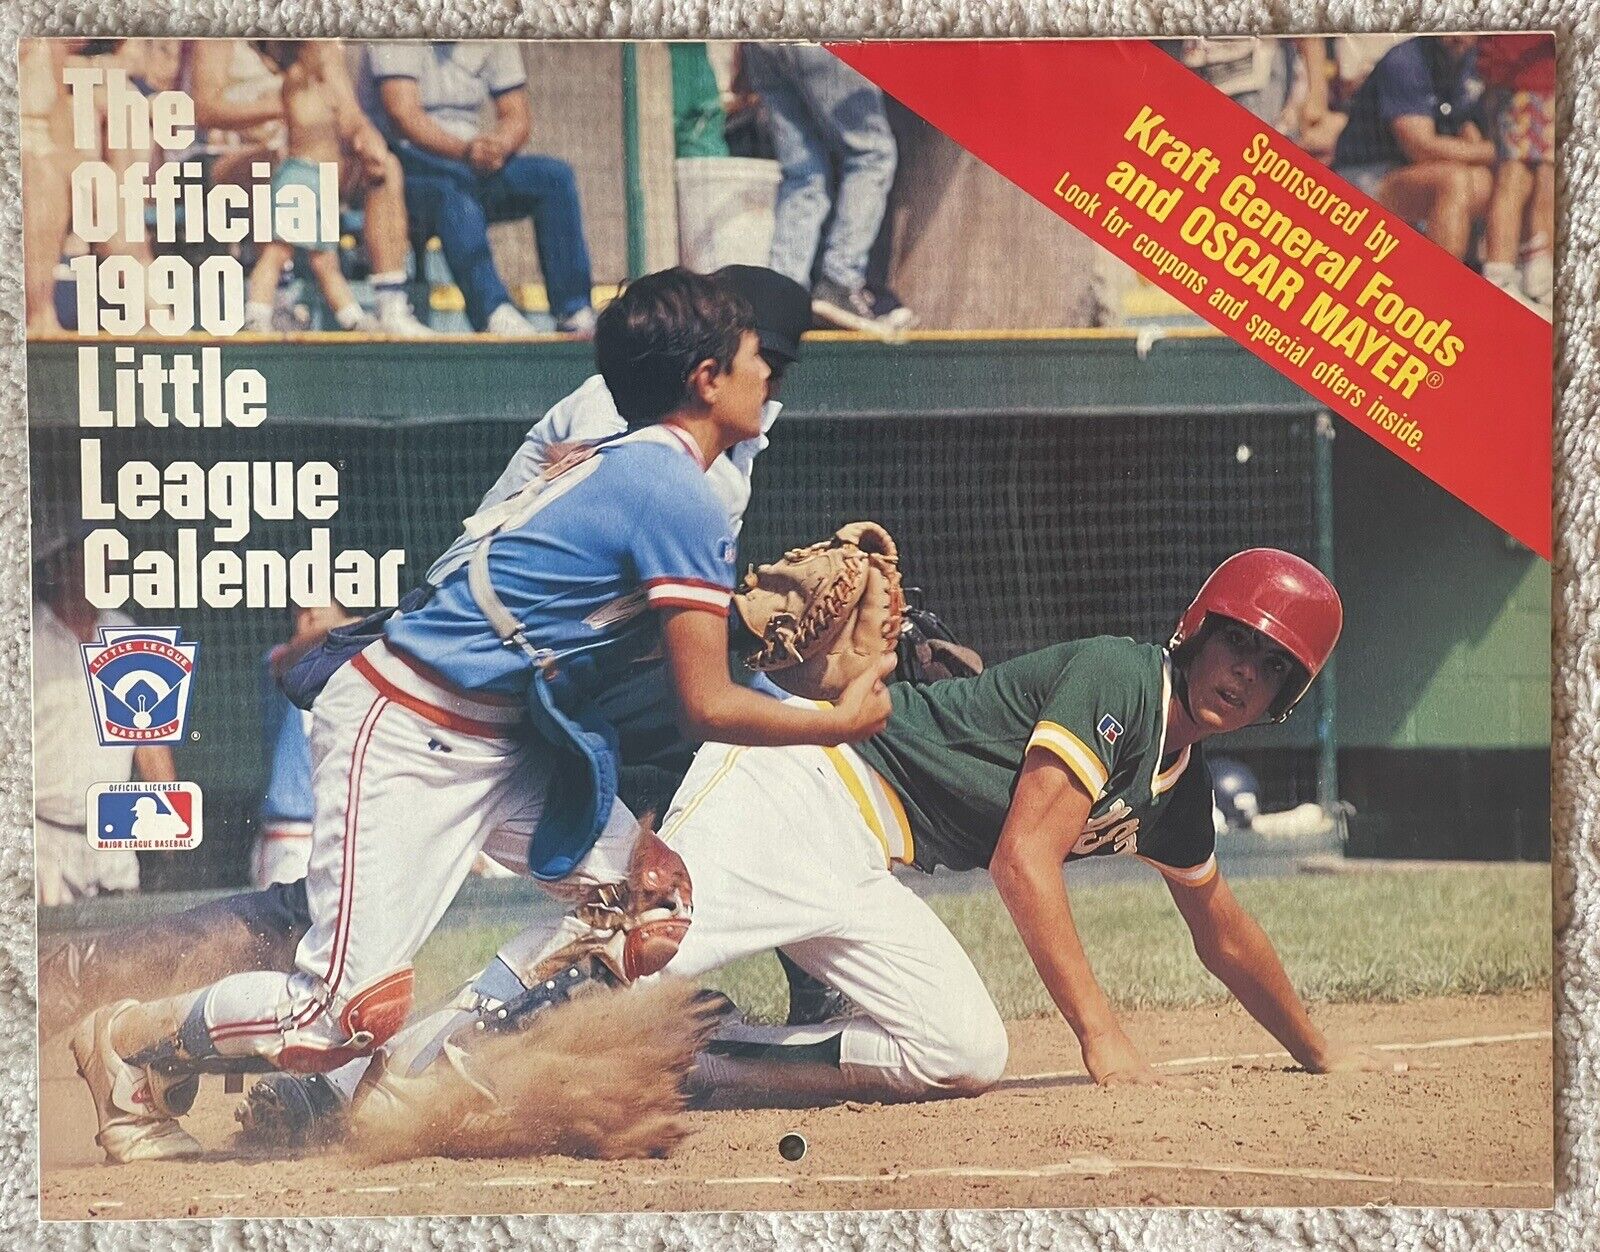 THE OFFICIAL 1990 LITTLE LEAGUE BASEBALL CALENDAR (KRAFT FOODS) MLB PLAYERS